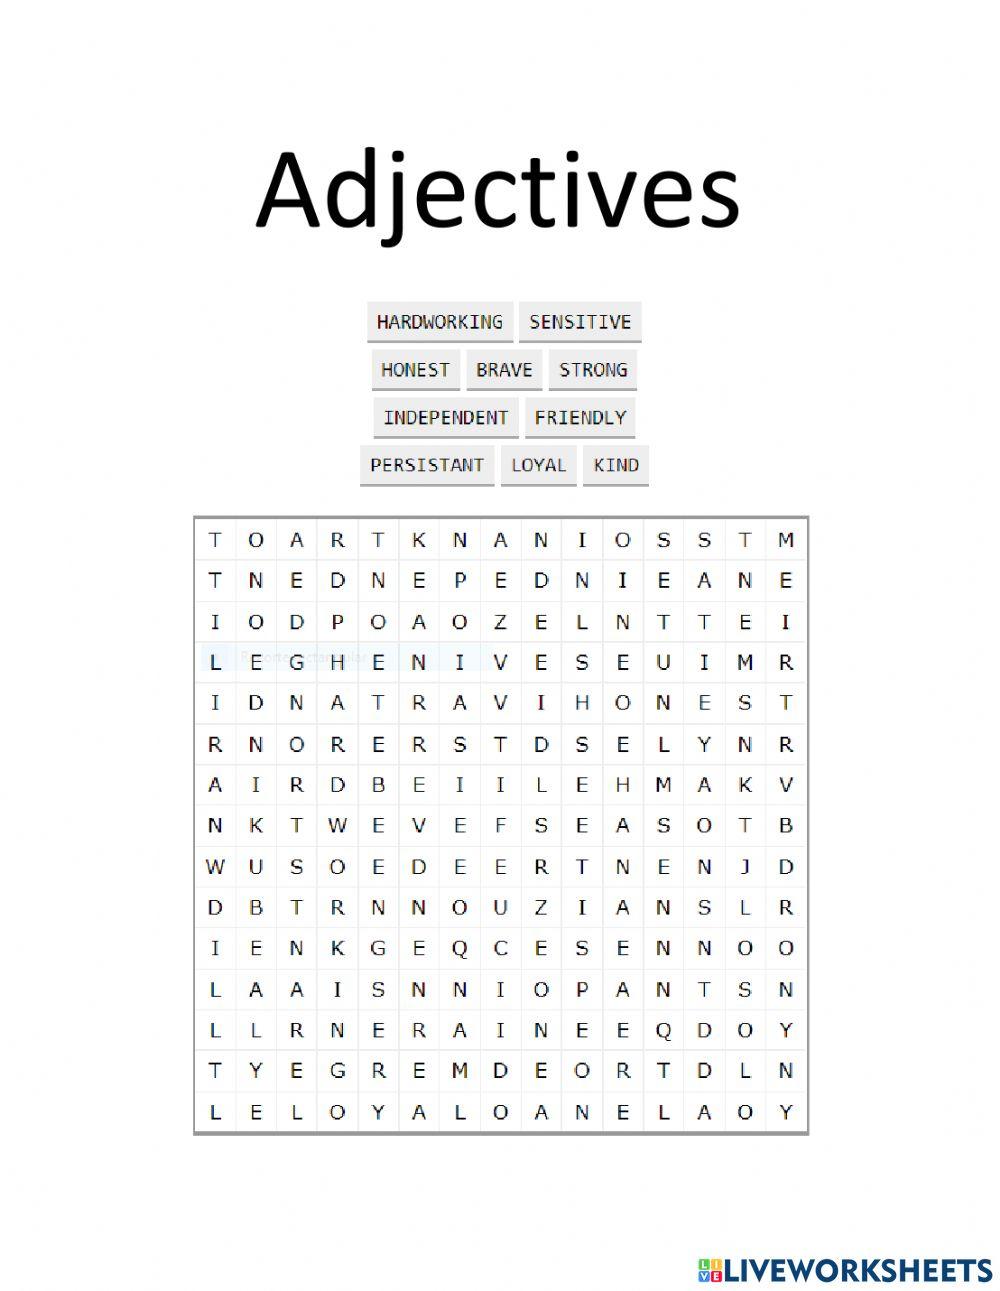 Adjetives